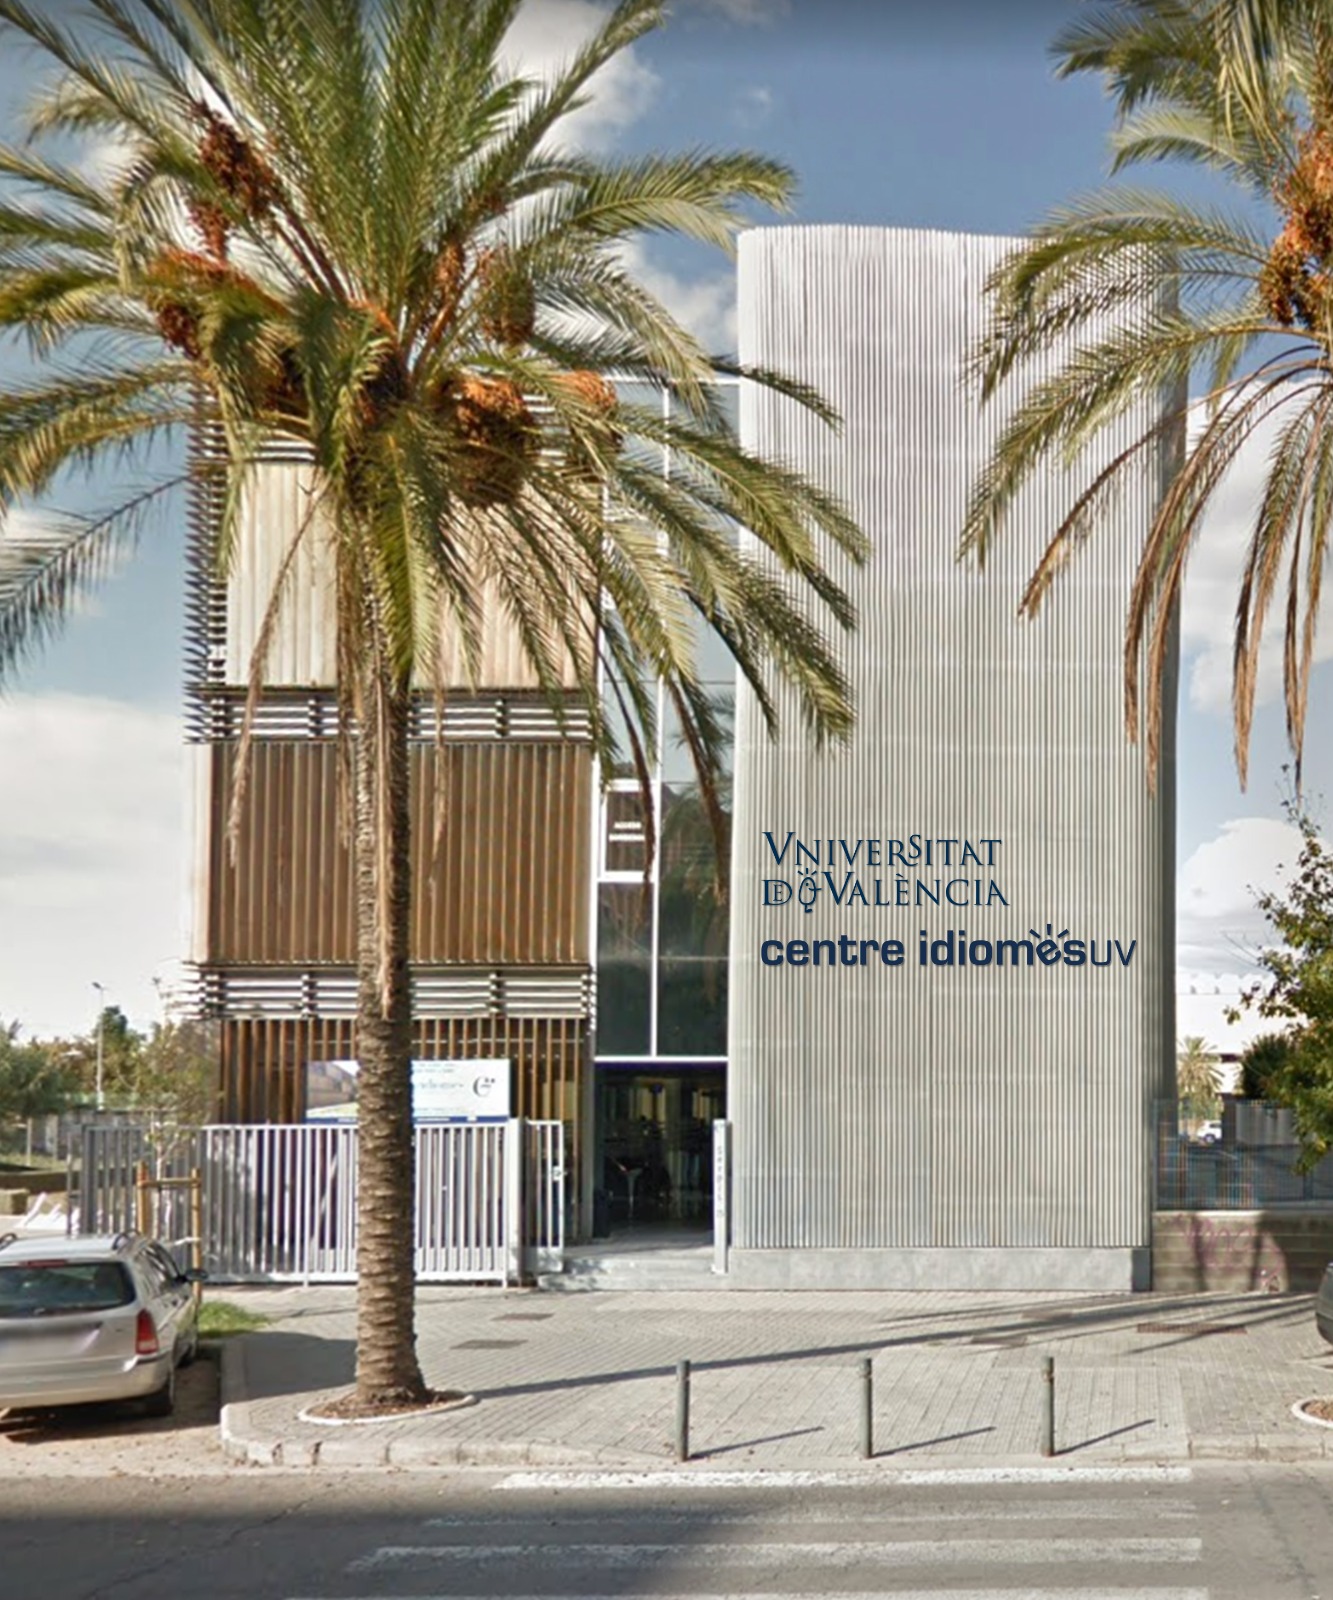 Centre d’Idiomes de la Universitat de València